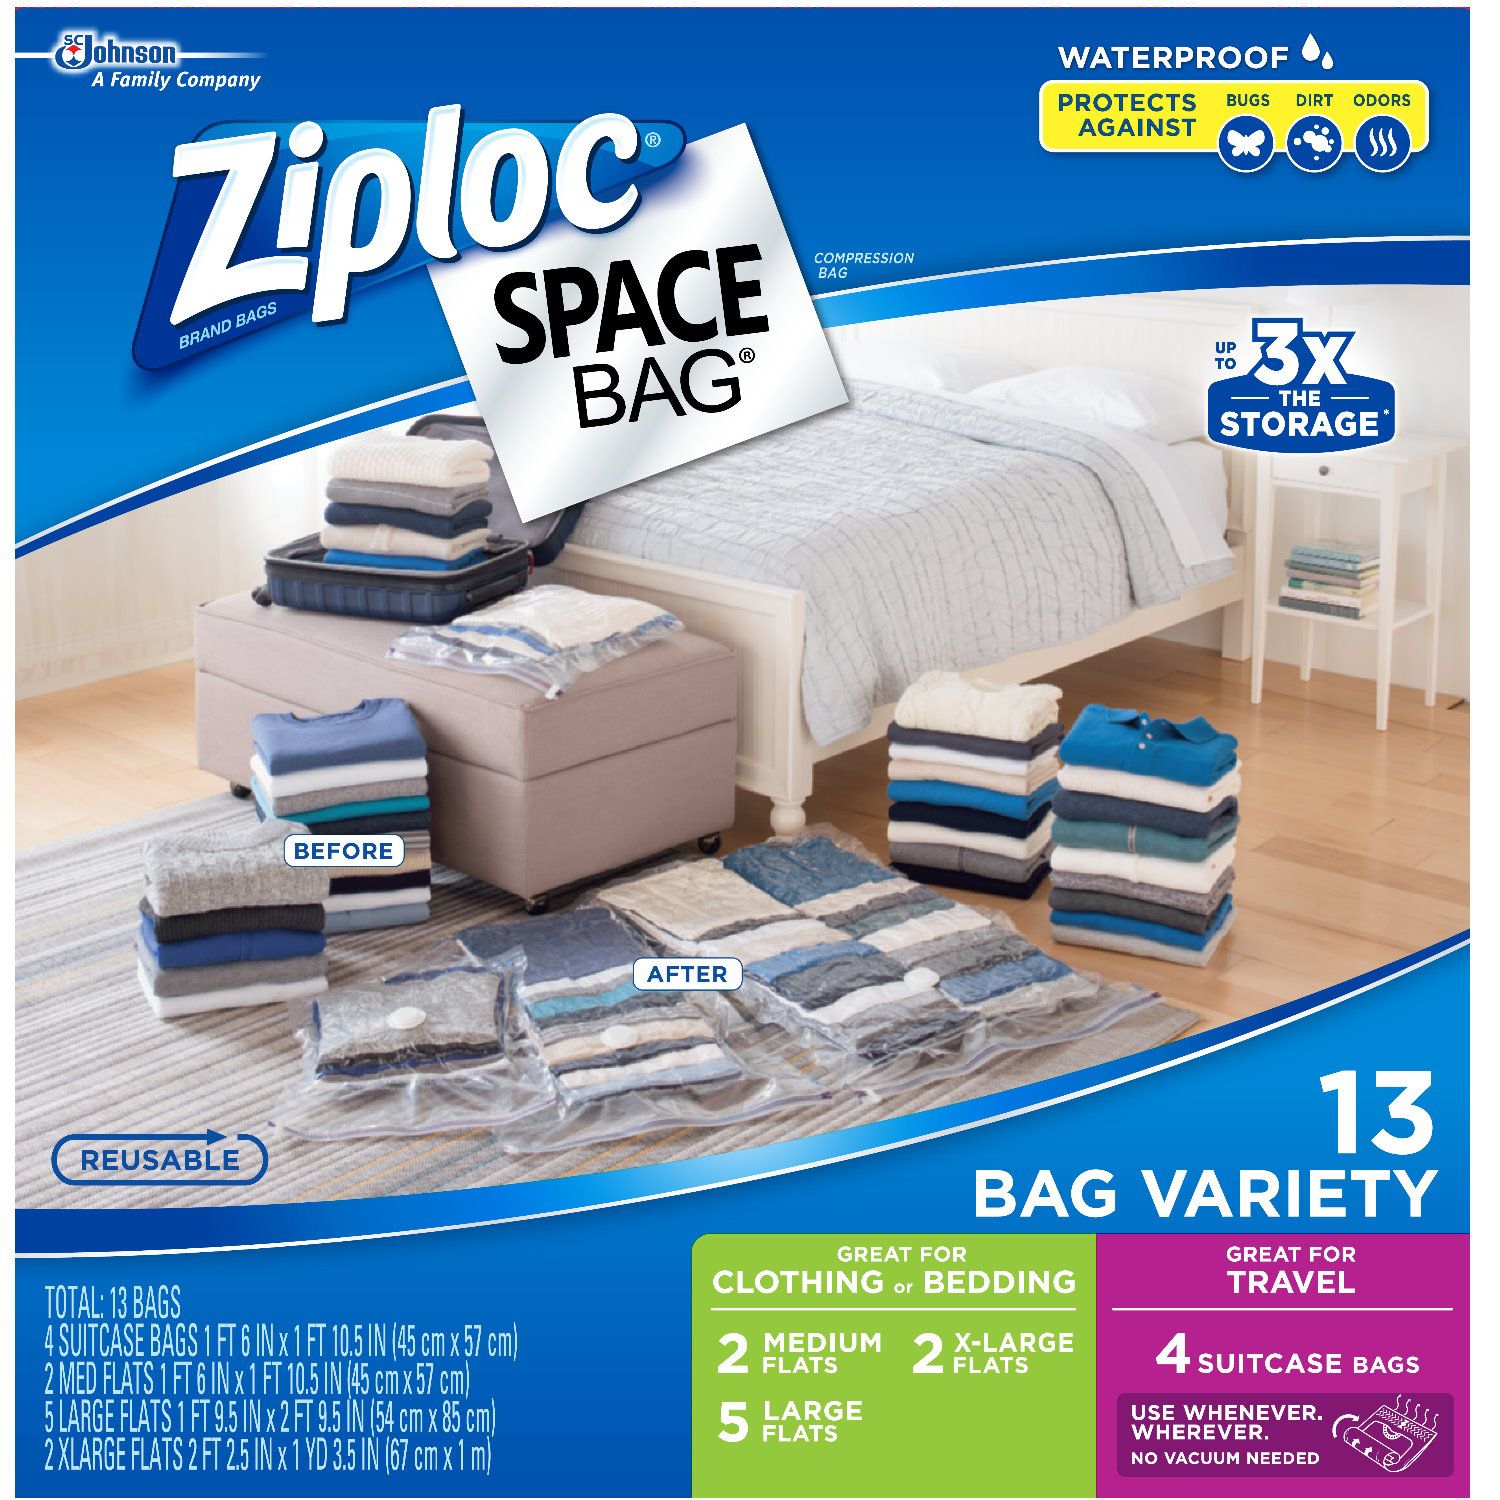 Ziploc Space Bag, Variety, 6 bags 